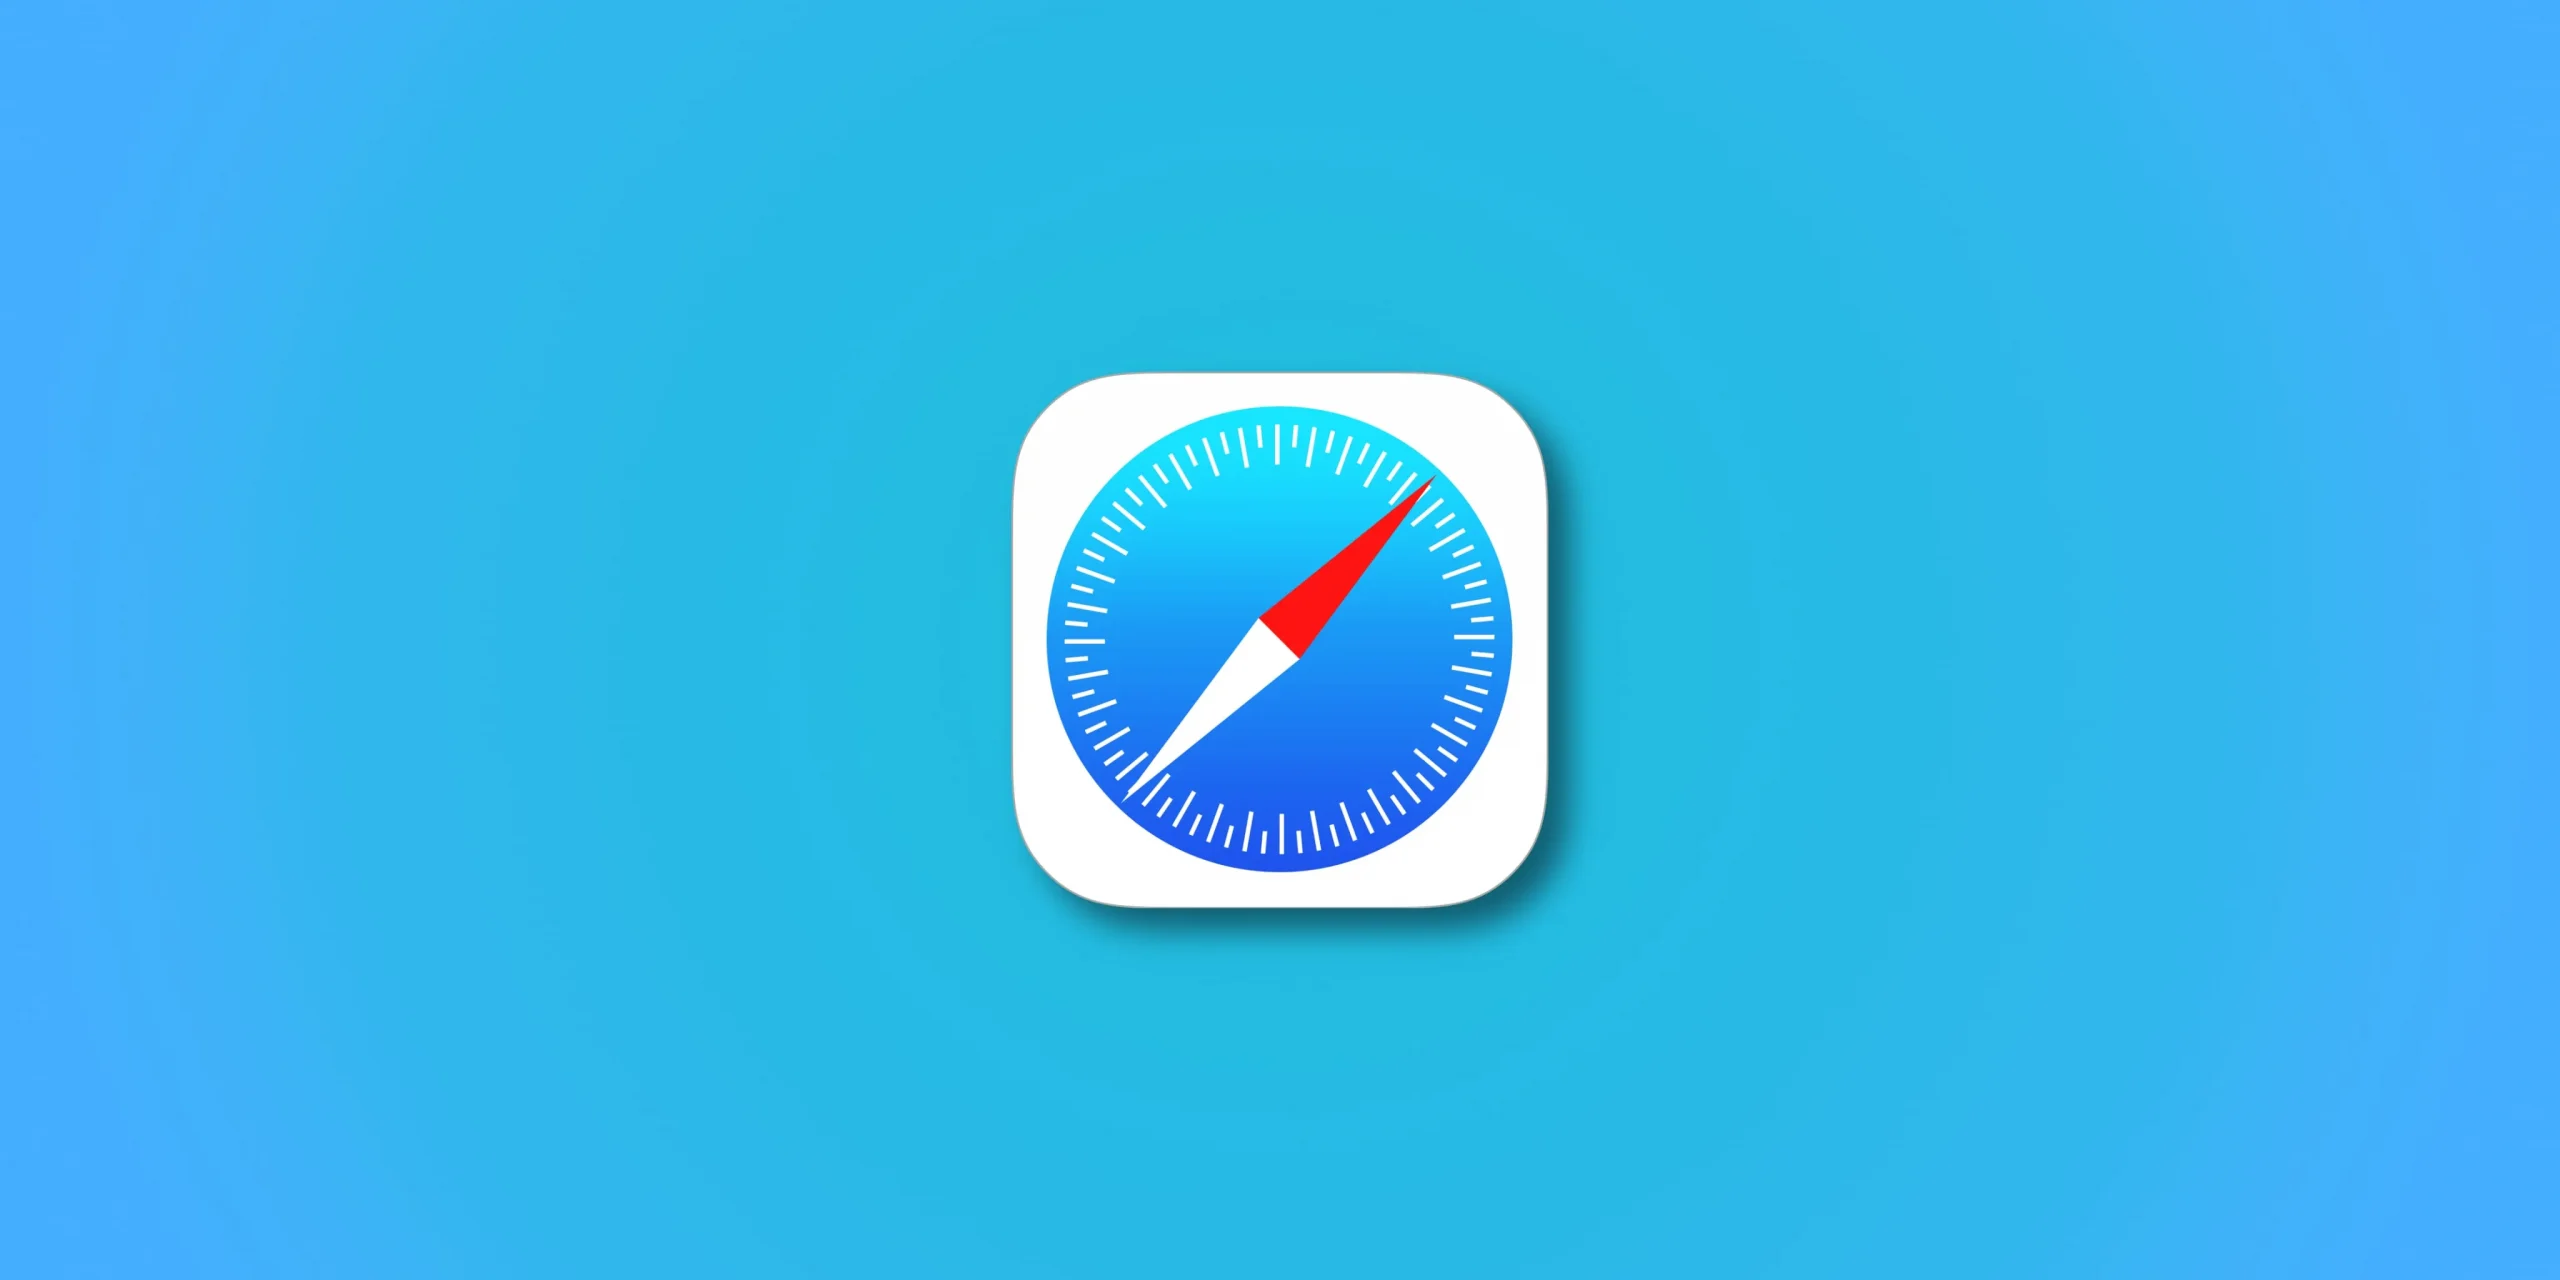 Abbildung zeigt ein Apple Safari-Logo vor einem blauen Hintergrund mit Farbverlauf